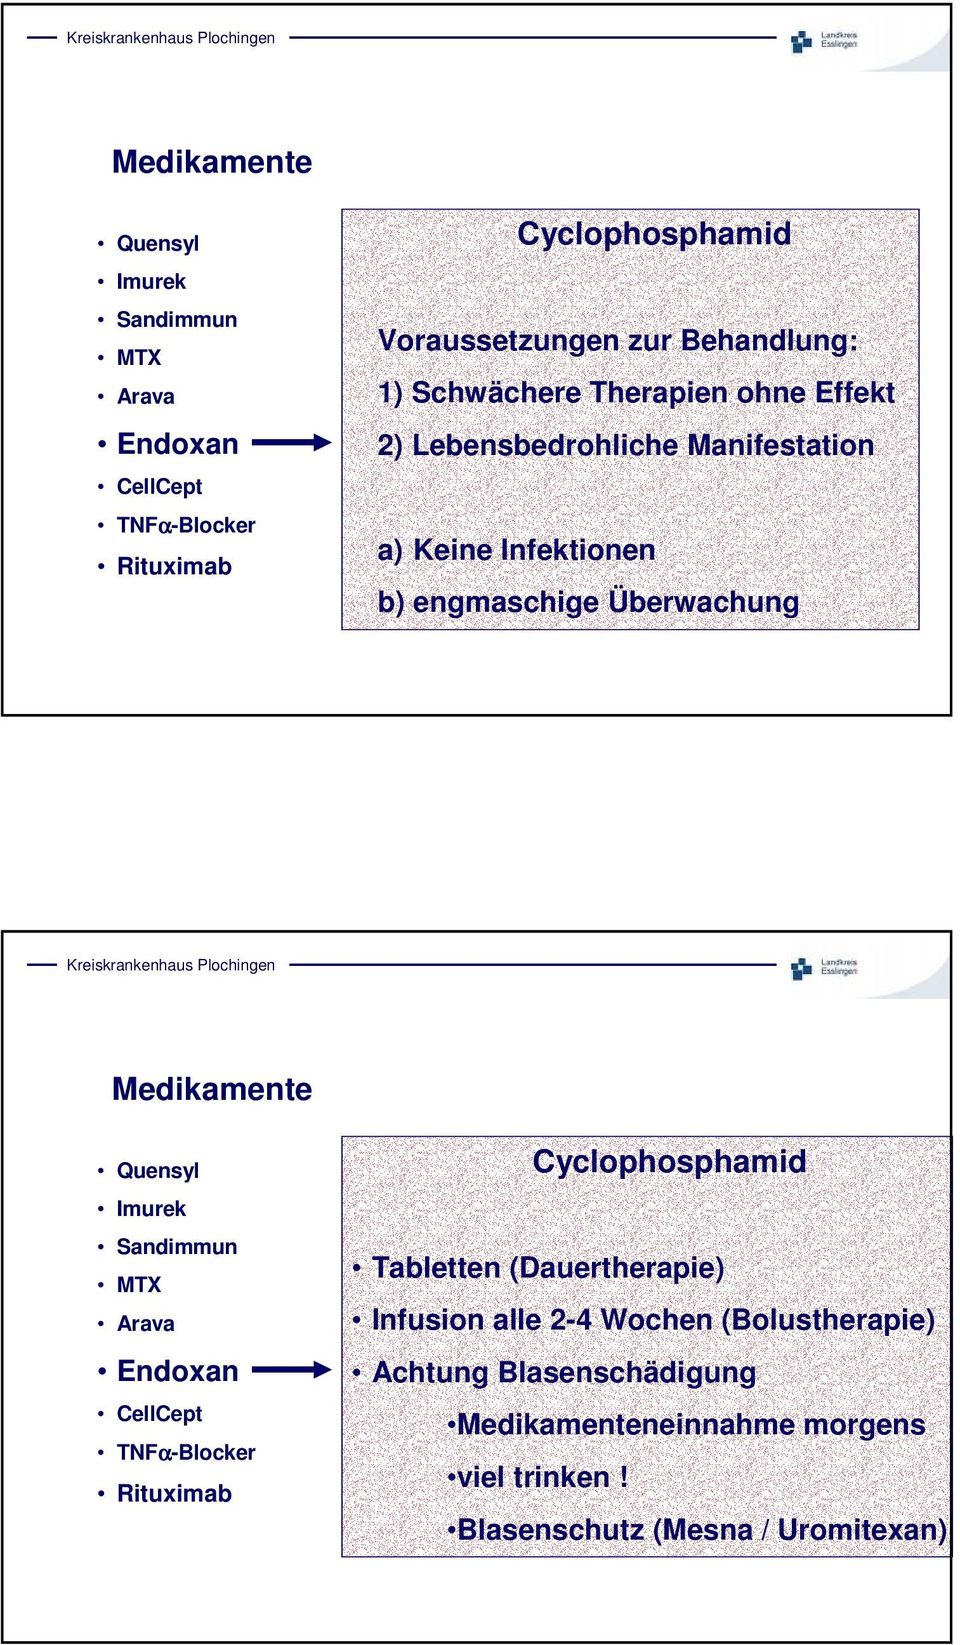 Cyclophosphamid Tabletten (Dauertherapie) Infusion alle 2-4 Wochen (Bolustherapie)